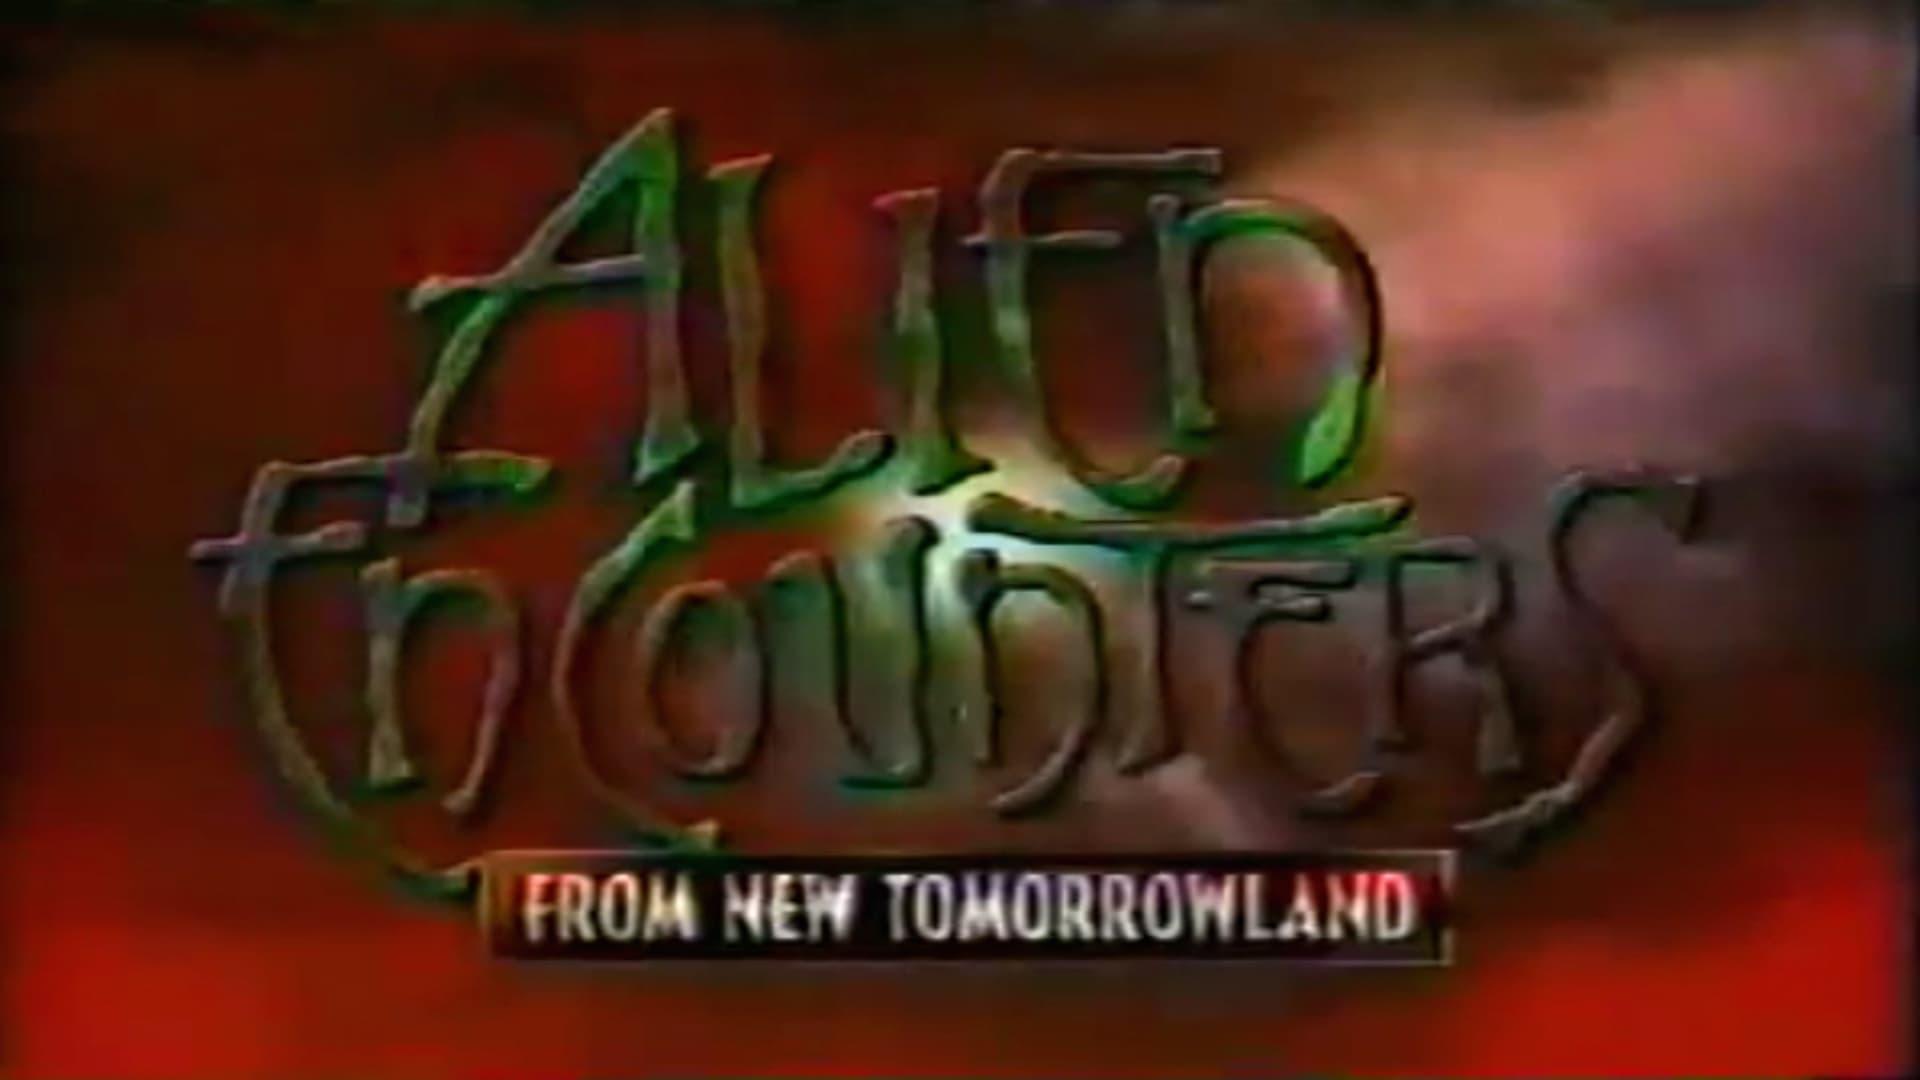 Alien Encounters from New Tomorrowland backdrop